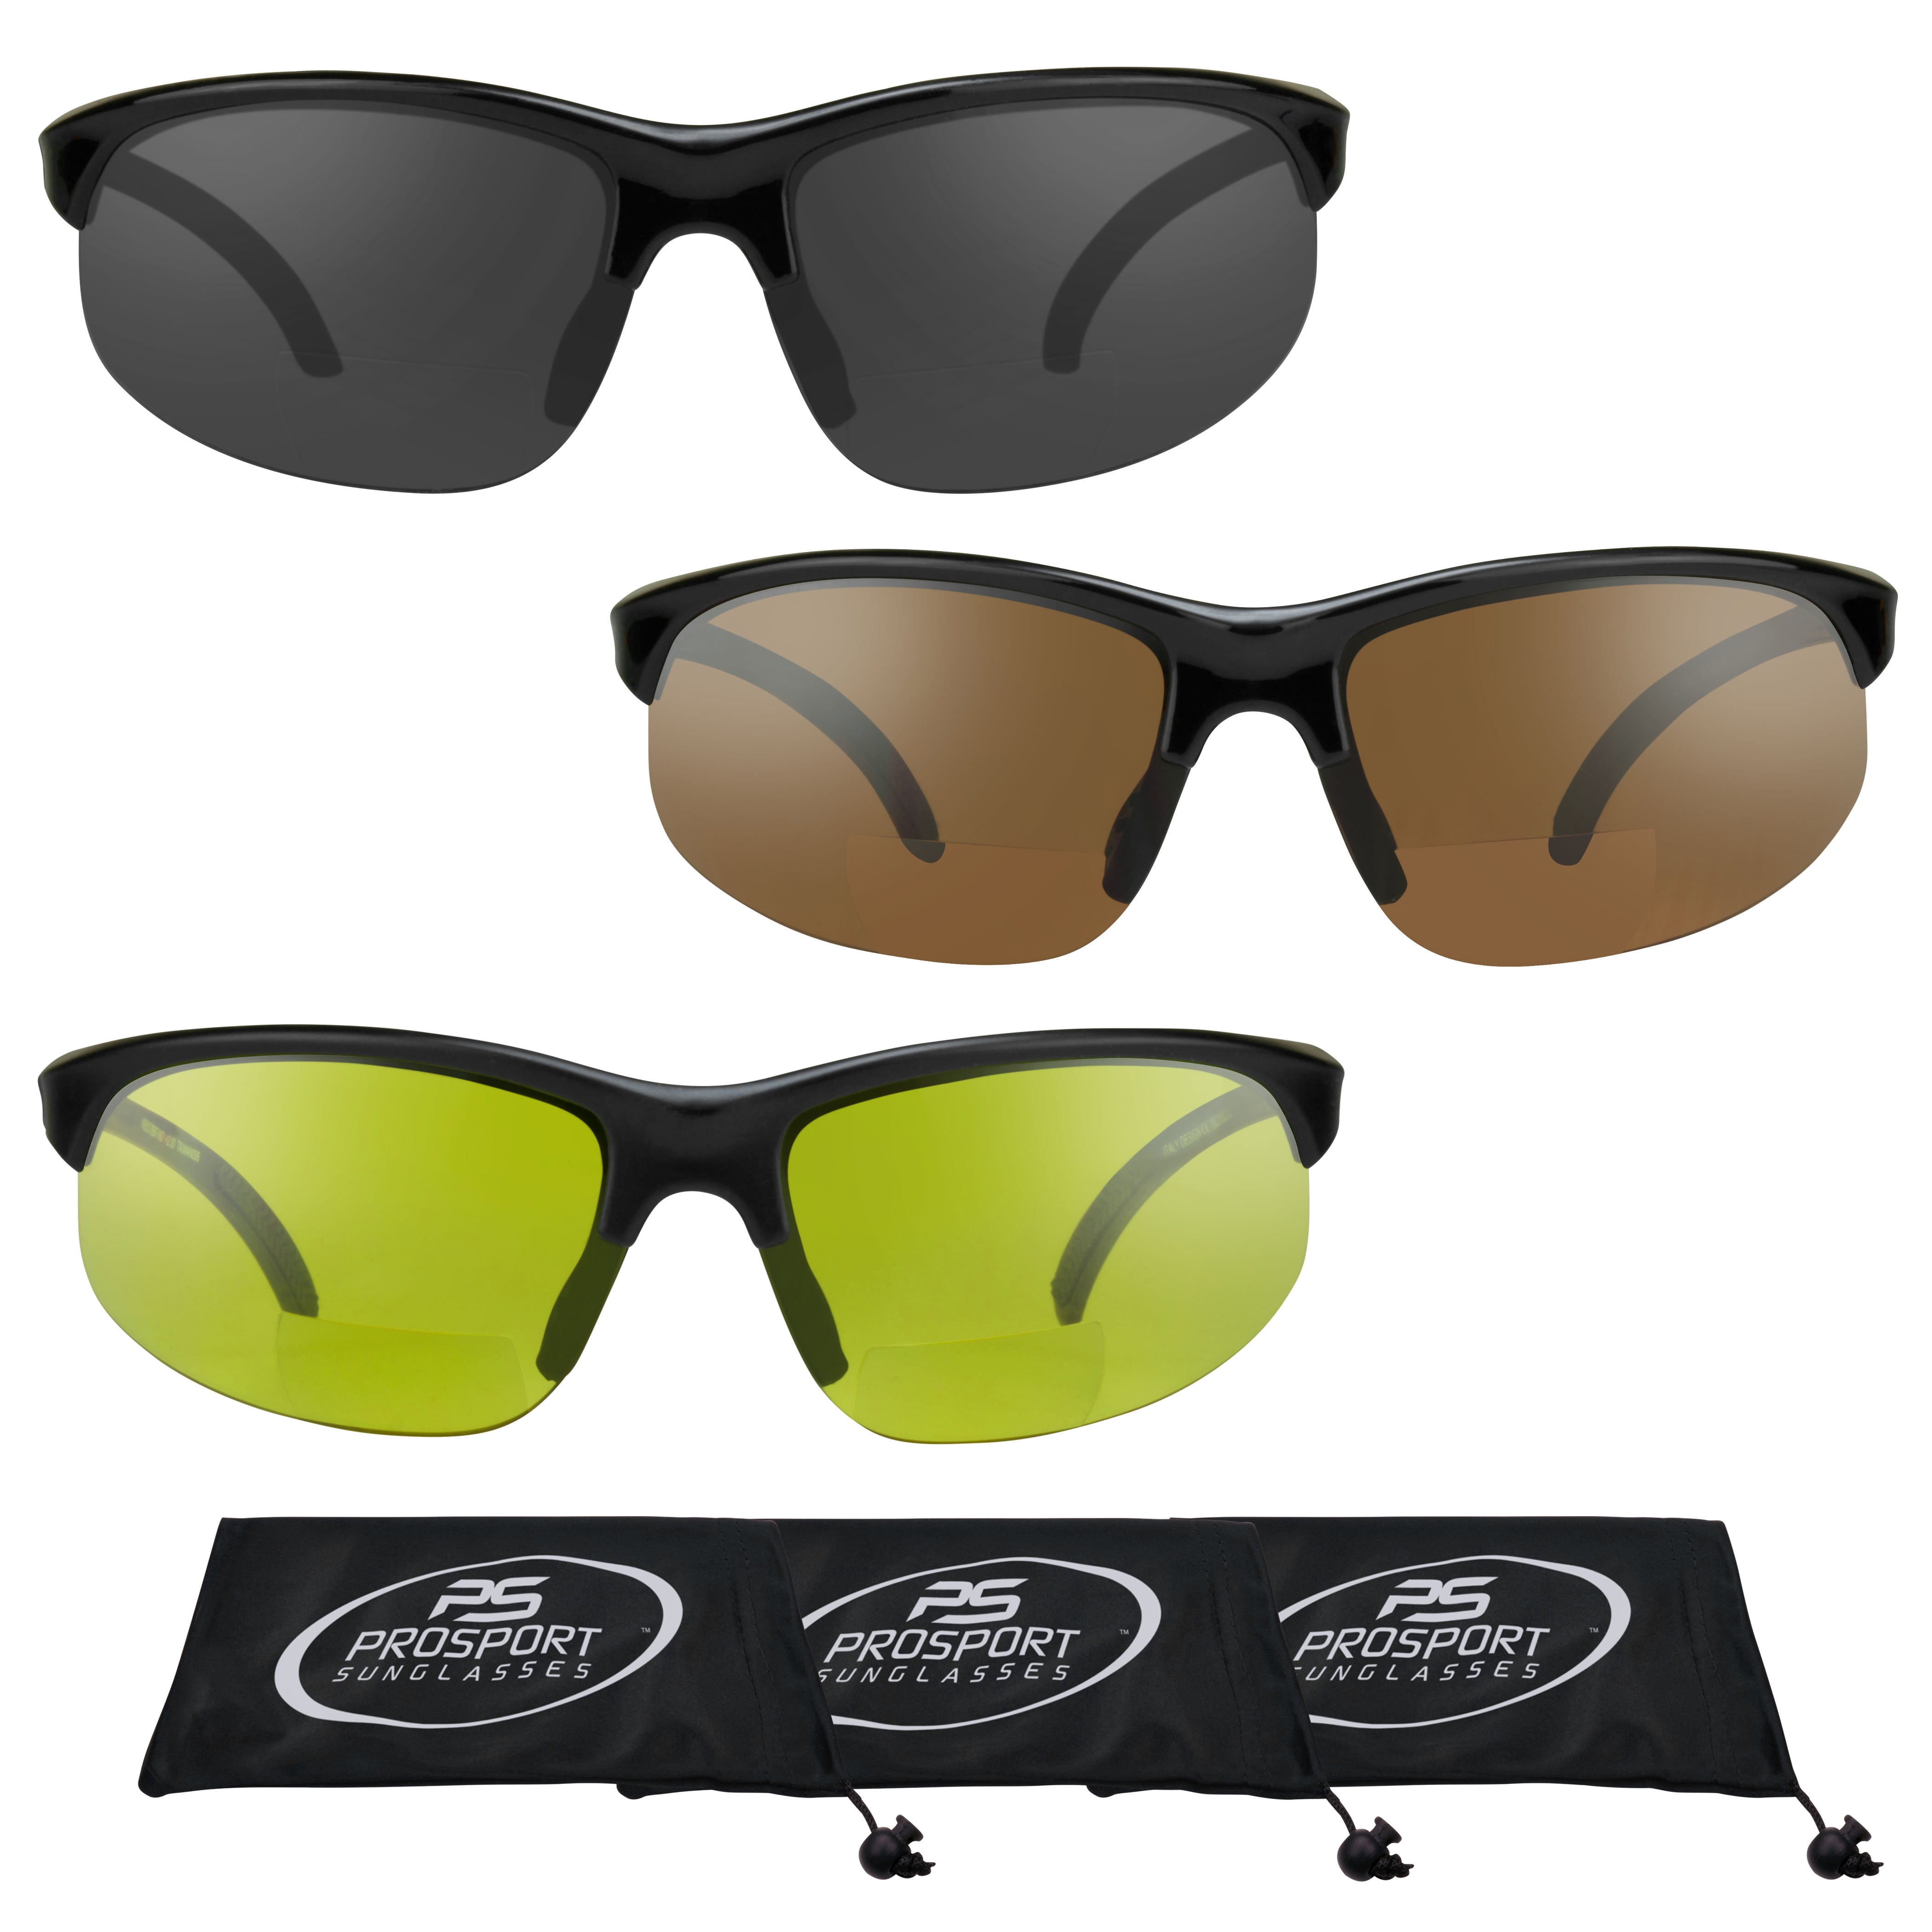 Prosport Sunglasses Bifocal Sunglass Sun Readers Men Women Sport Wrap Gray Hd And Yellow